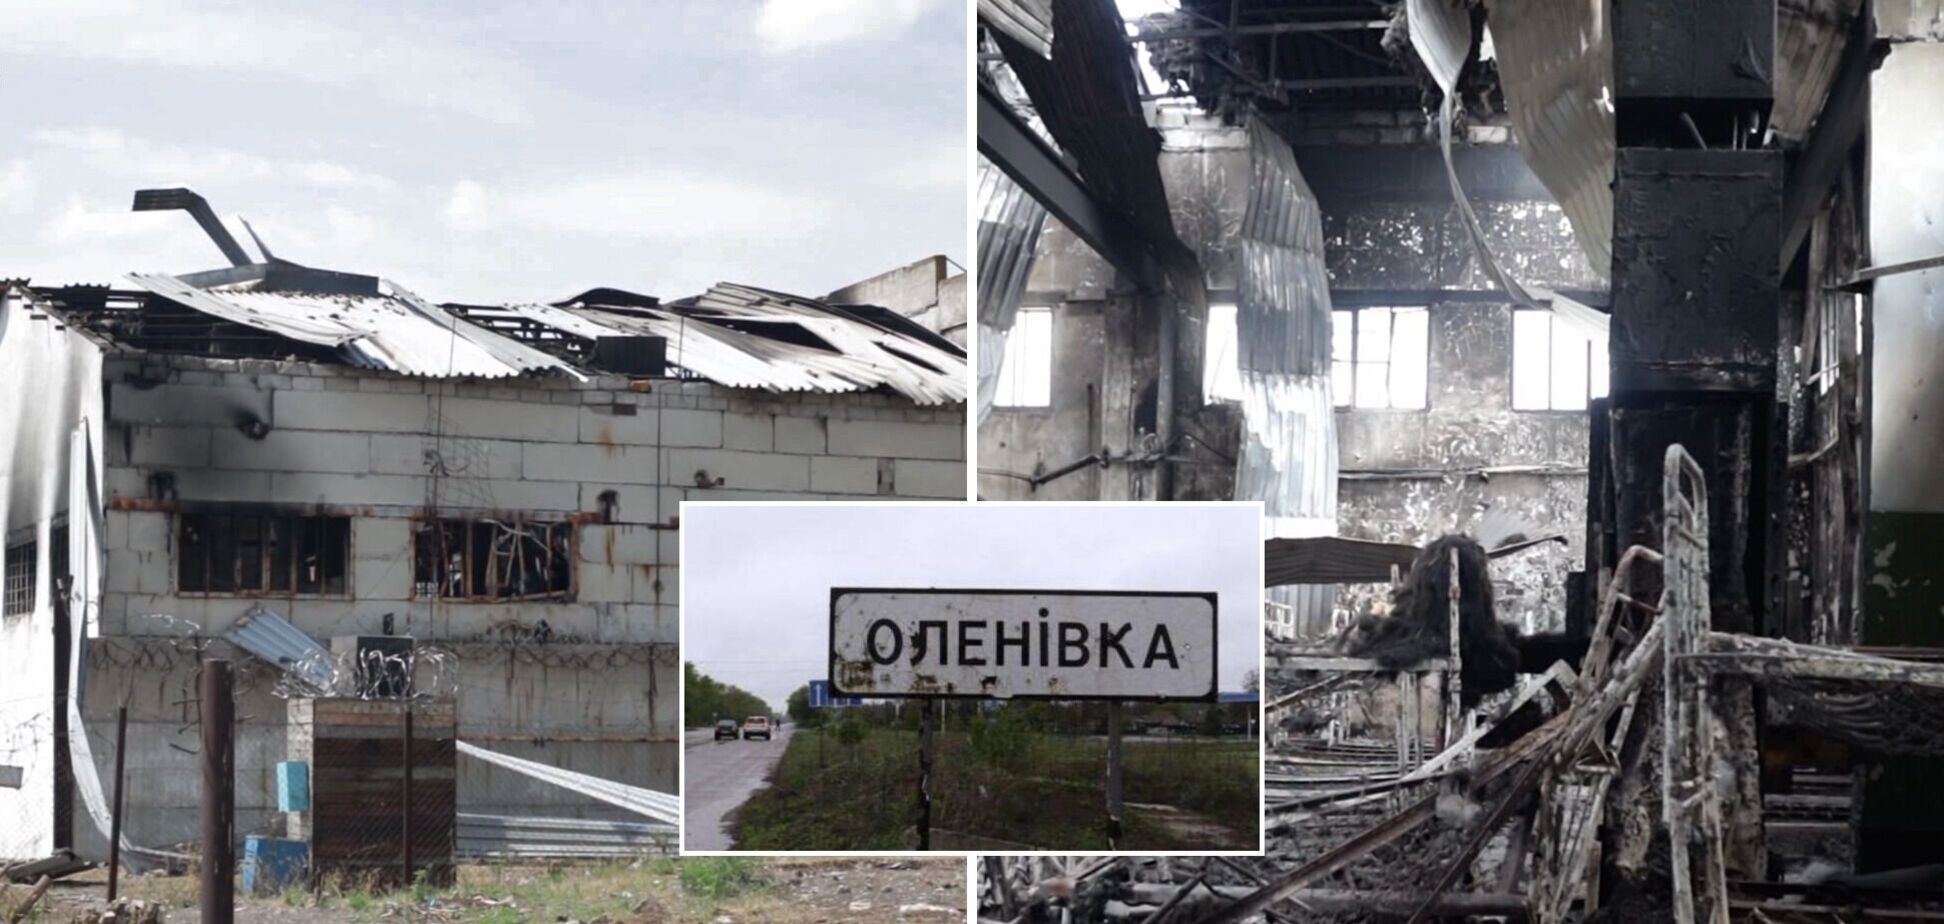 В списках раненых и погибших в Еленовке есть несовпадения, Украина ждет приезда отдельной миссии ООН, – омбудсмен